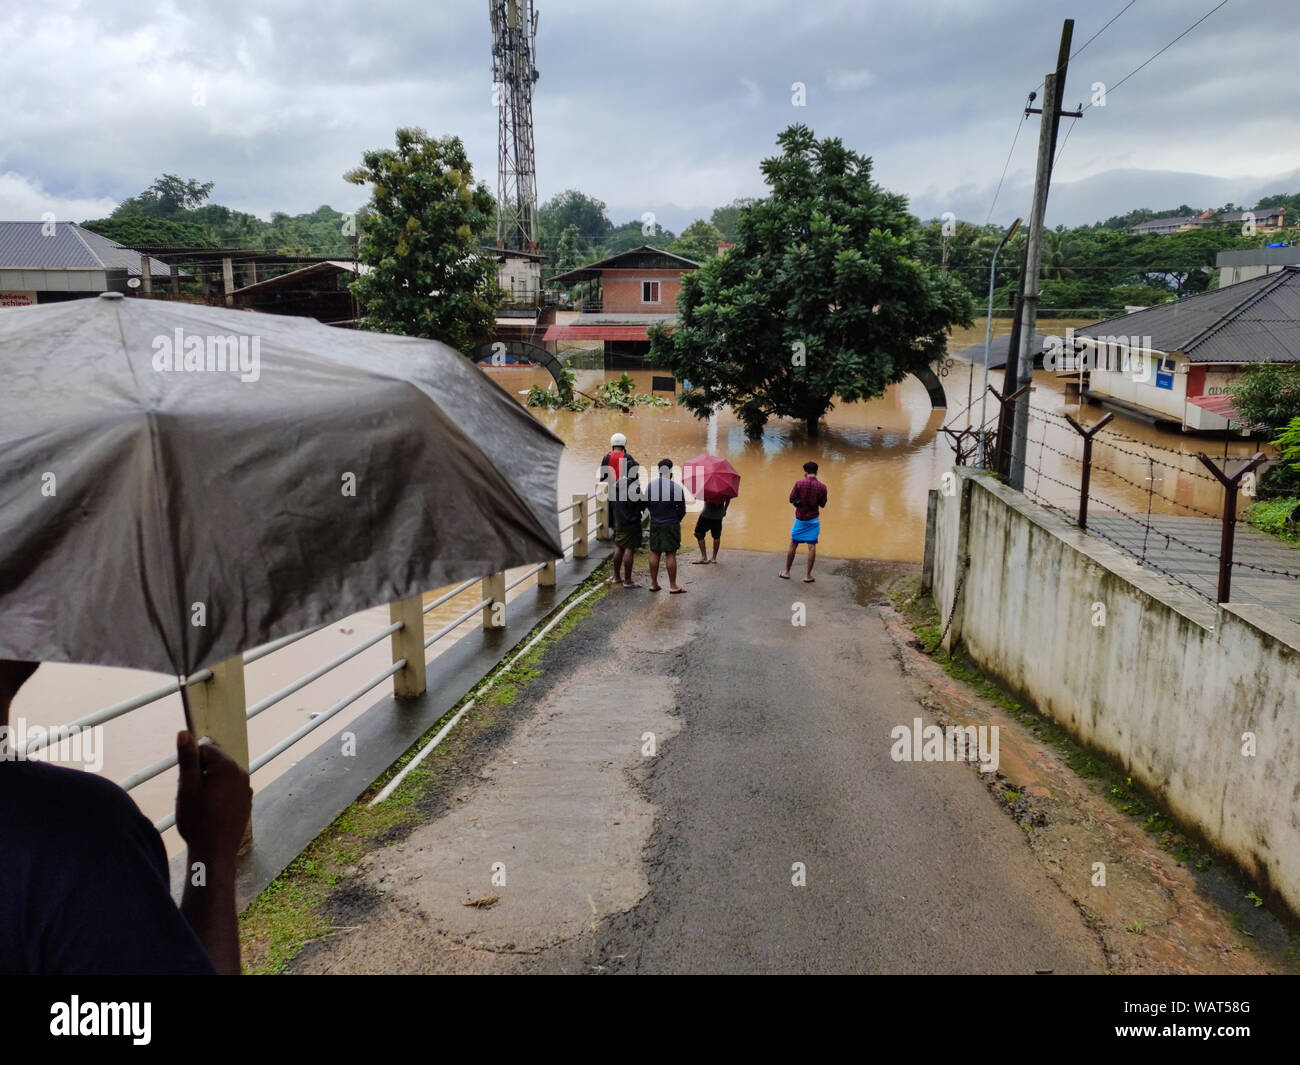 NILAMBUR, Kerala, Inde - août 09, 2019 : Les gens se sont rassemblés près de l'inondation dans la rue, Janathapadi Nilambur. Banque D'Images